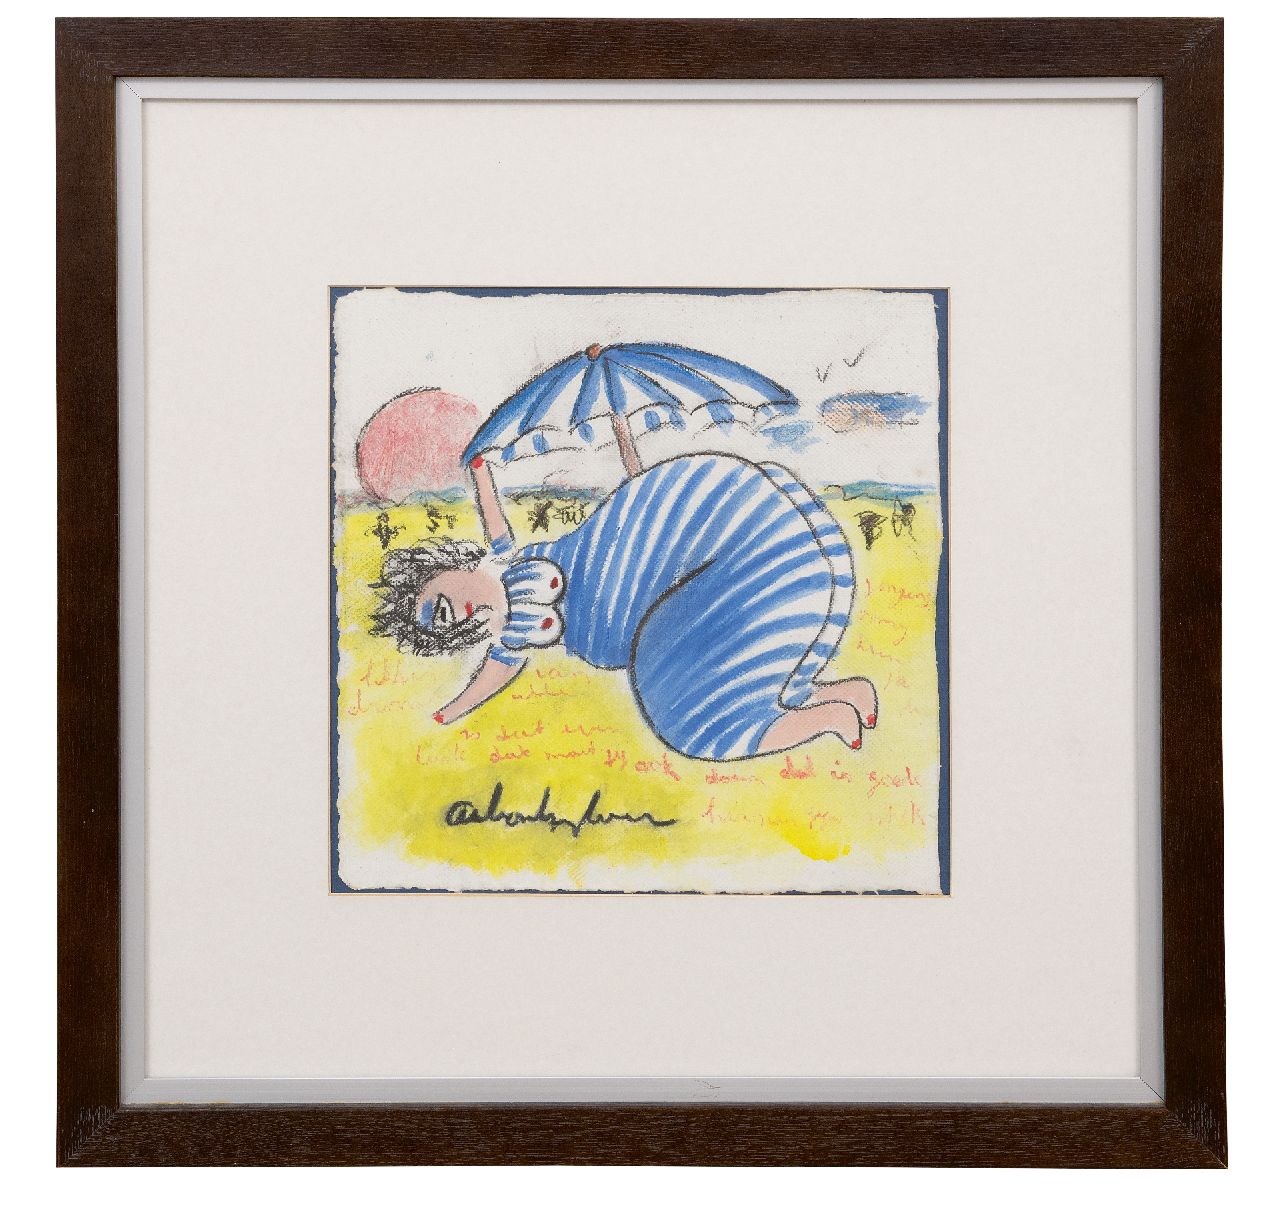 Heyboer A.  | Anton Heyboer | Aquarellen en tekeningen te koop aangeboden | Zonnebaadster onder een parasol, krijt en gouache op papier 28,0 x 28,0 cm, gesigneerd middenonder